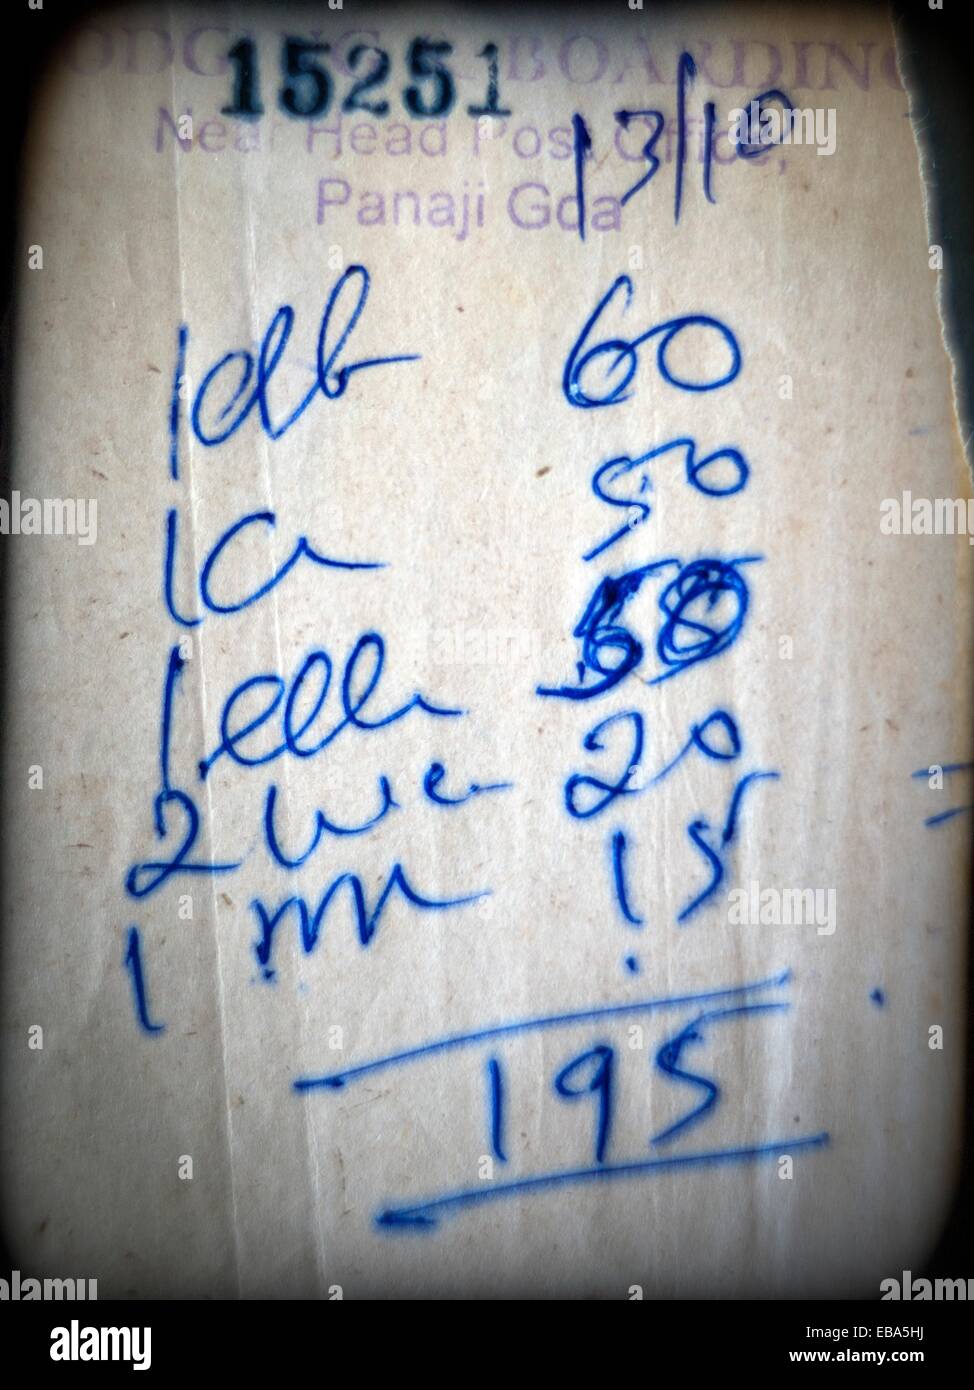 factura de restaurante escrita a mano, restaurant bill handwritten, Stock Photo